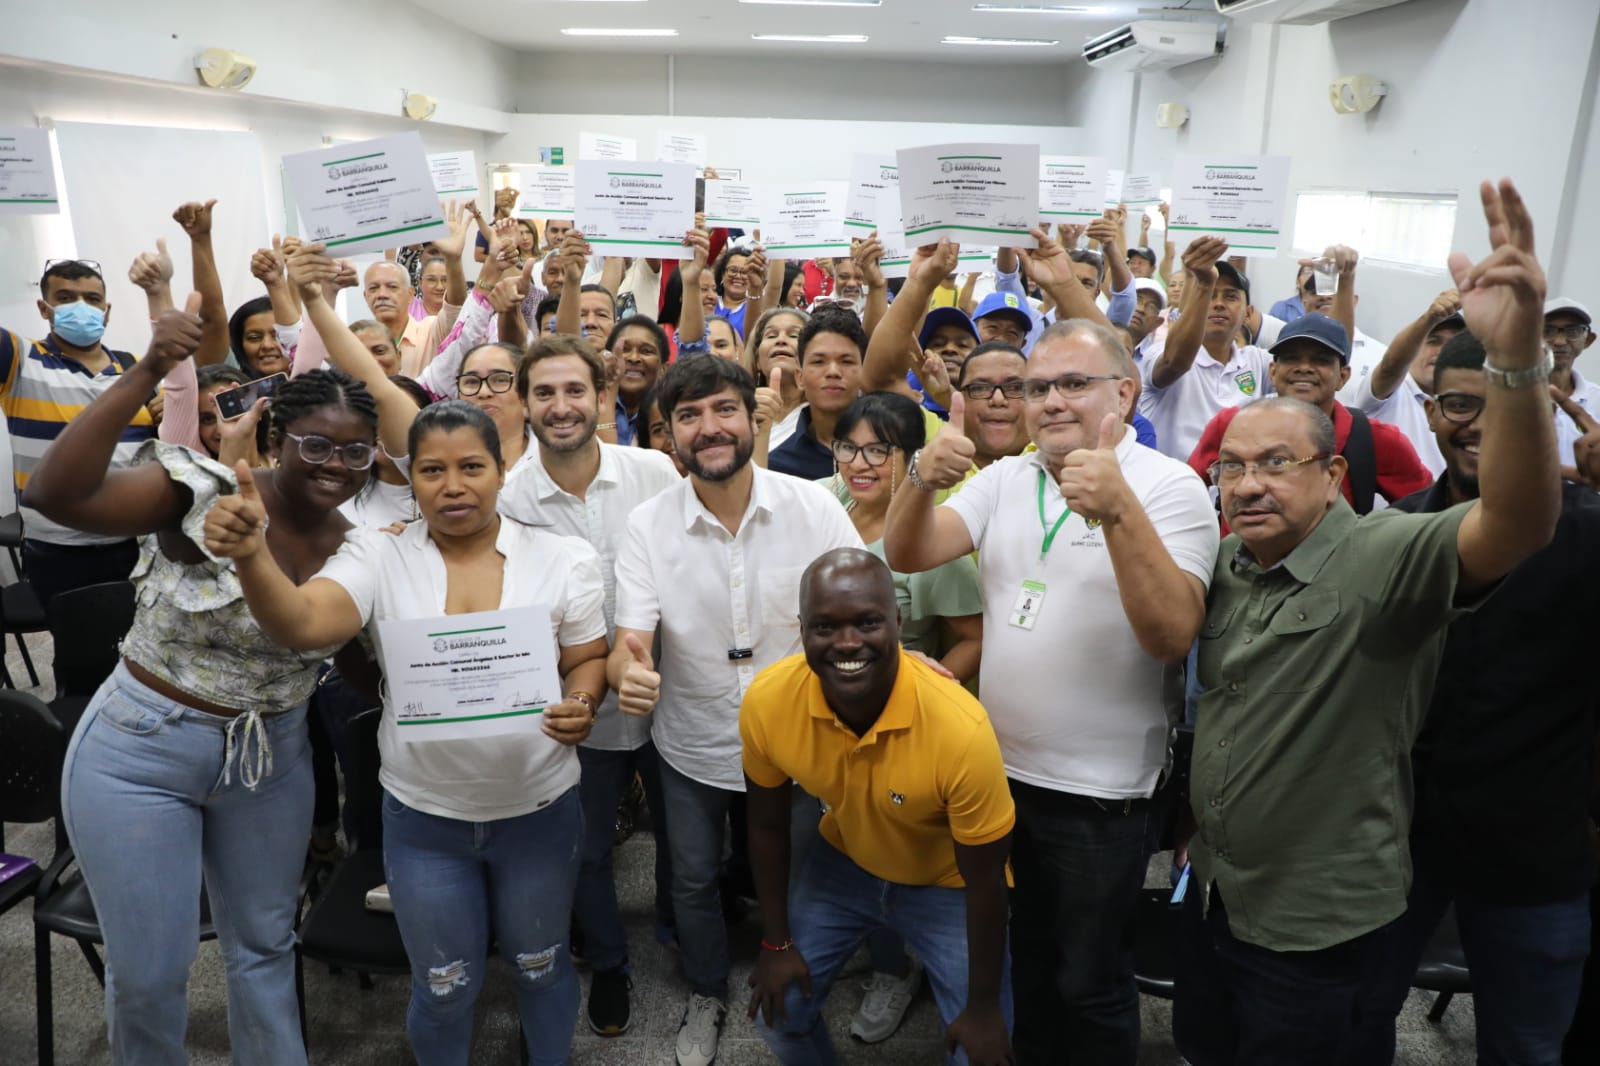 Alcalde Pumarejo en la Junta de Acción Comunal afirmó seguir construyendo con todos “la Barranquilla que soñamos”